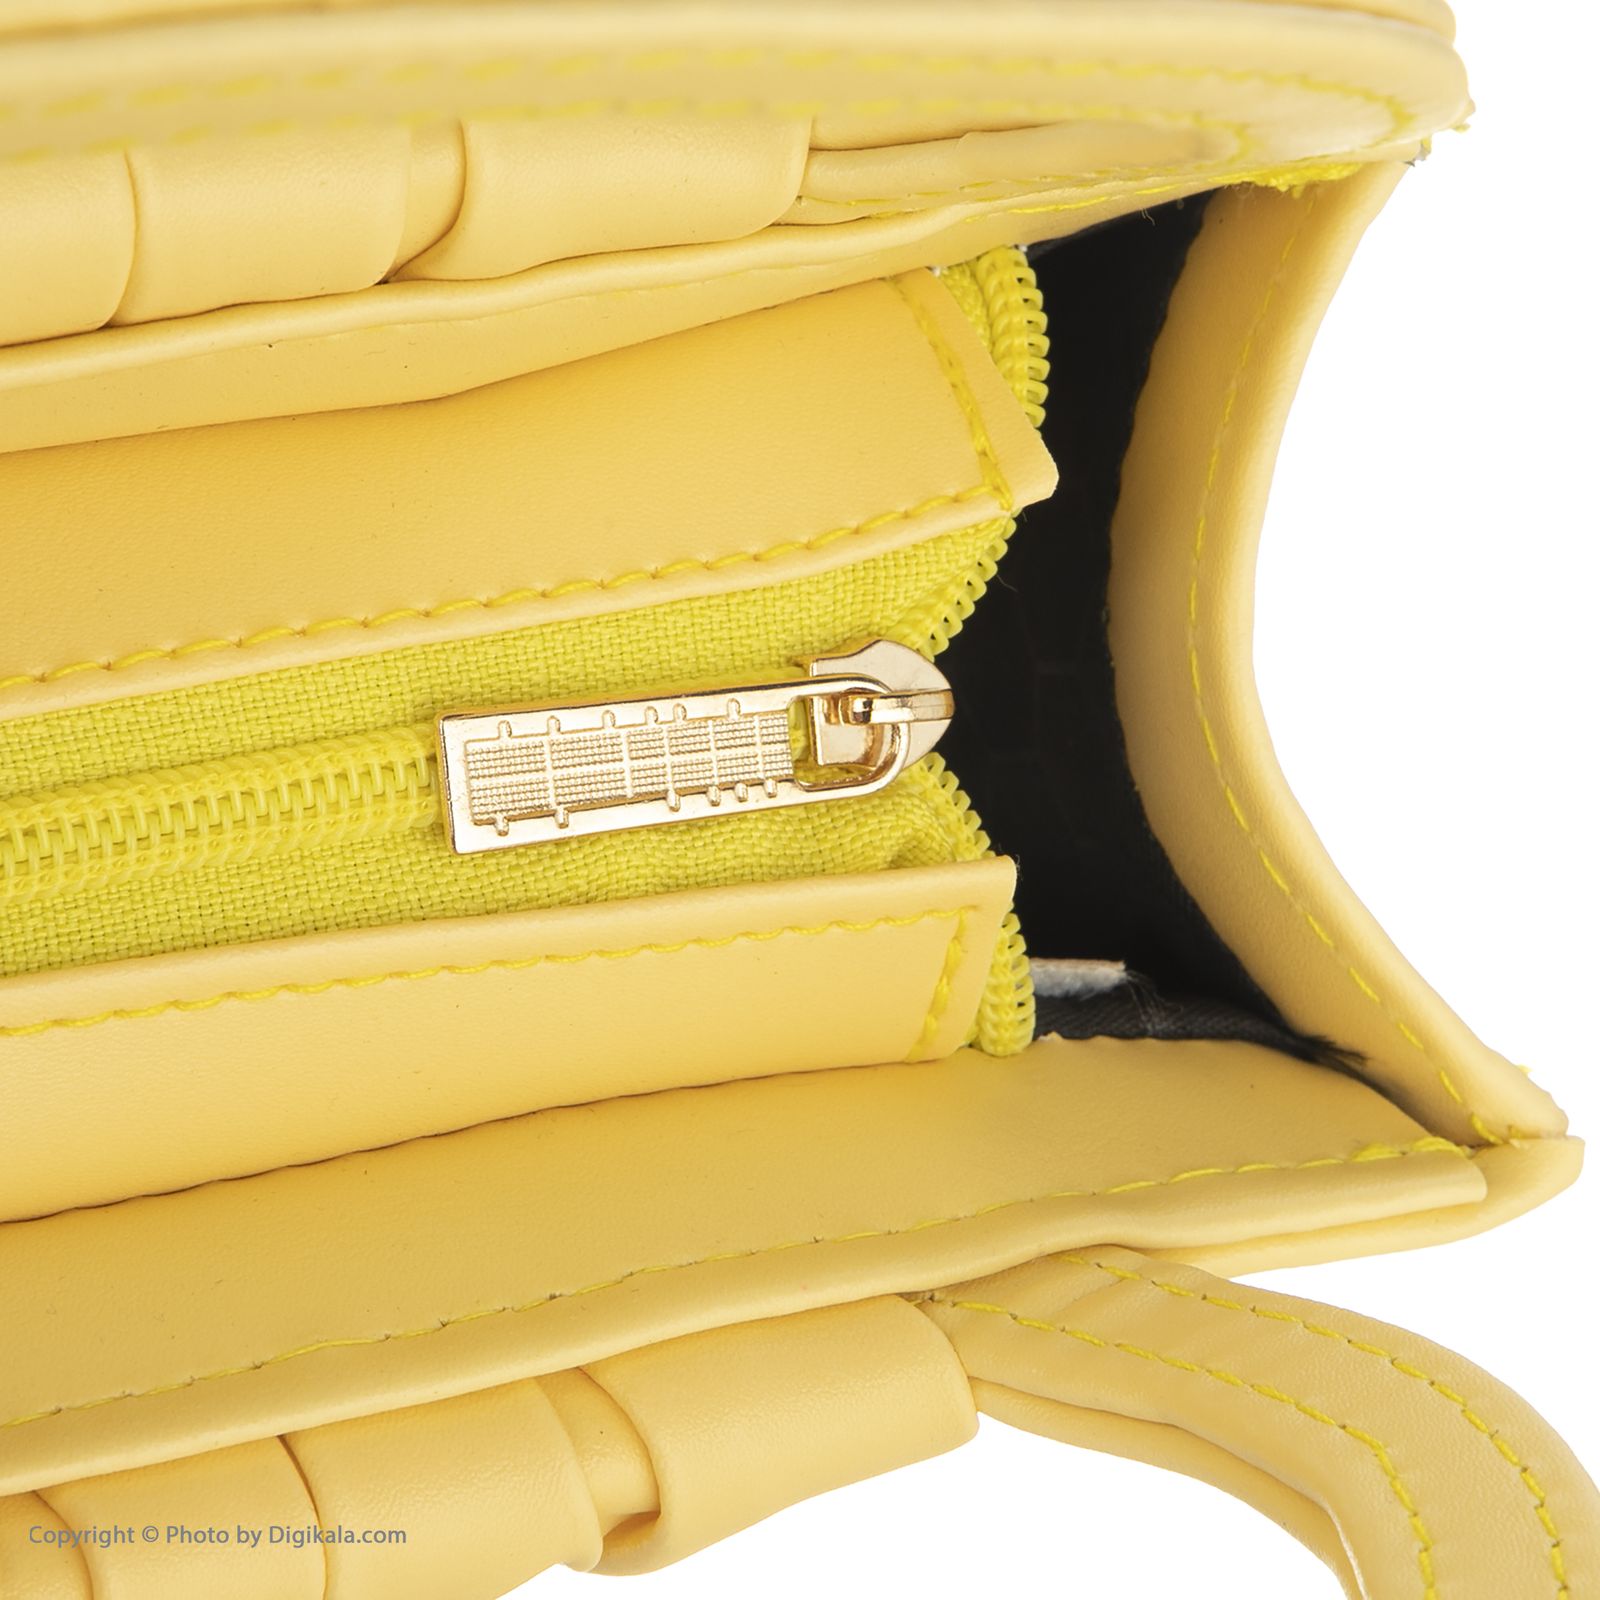 کیف دستی زنانه اسپیور مدل DWA25 -  - 43